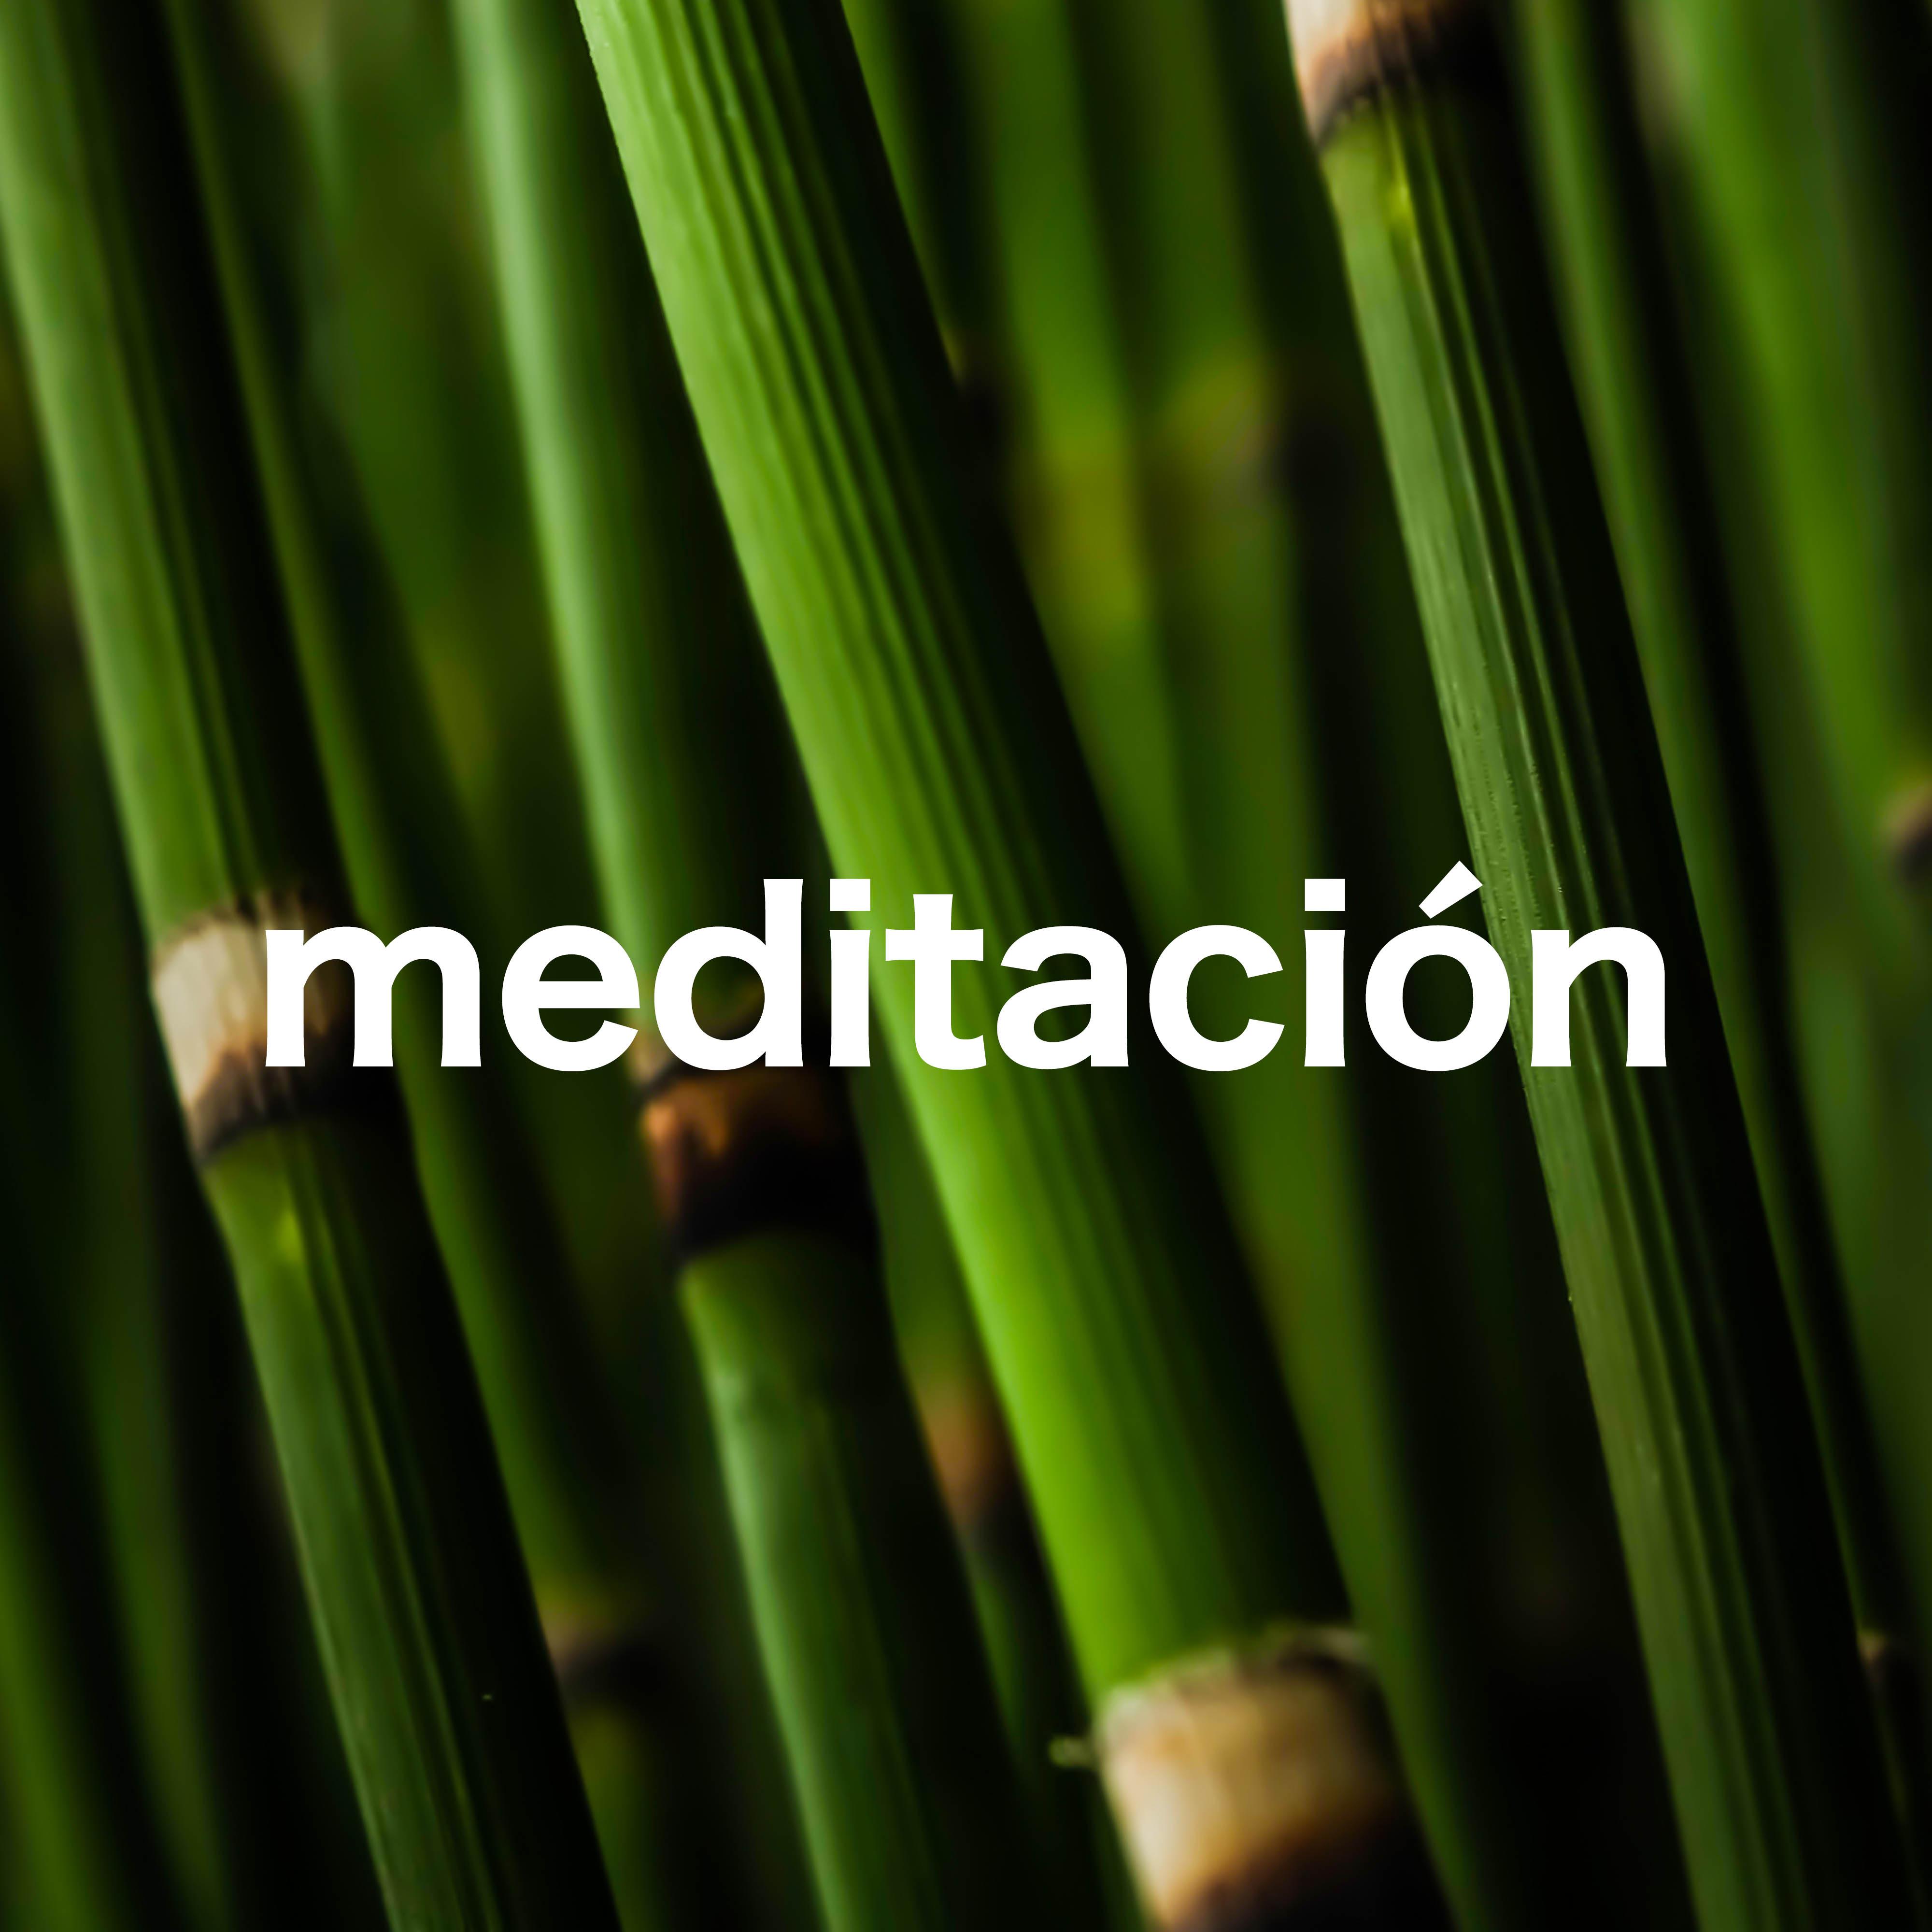 Meditacion Zen New Age